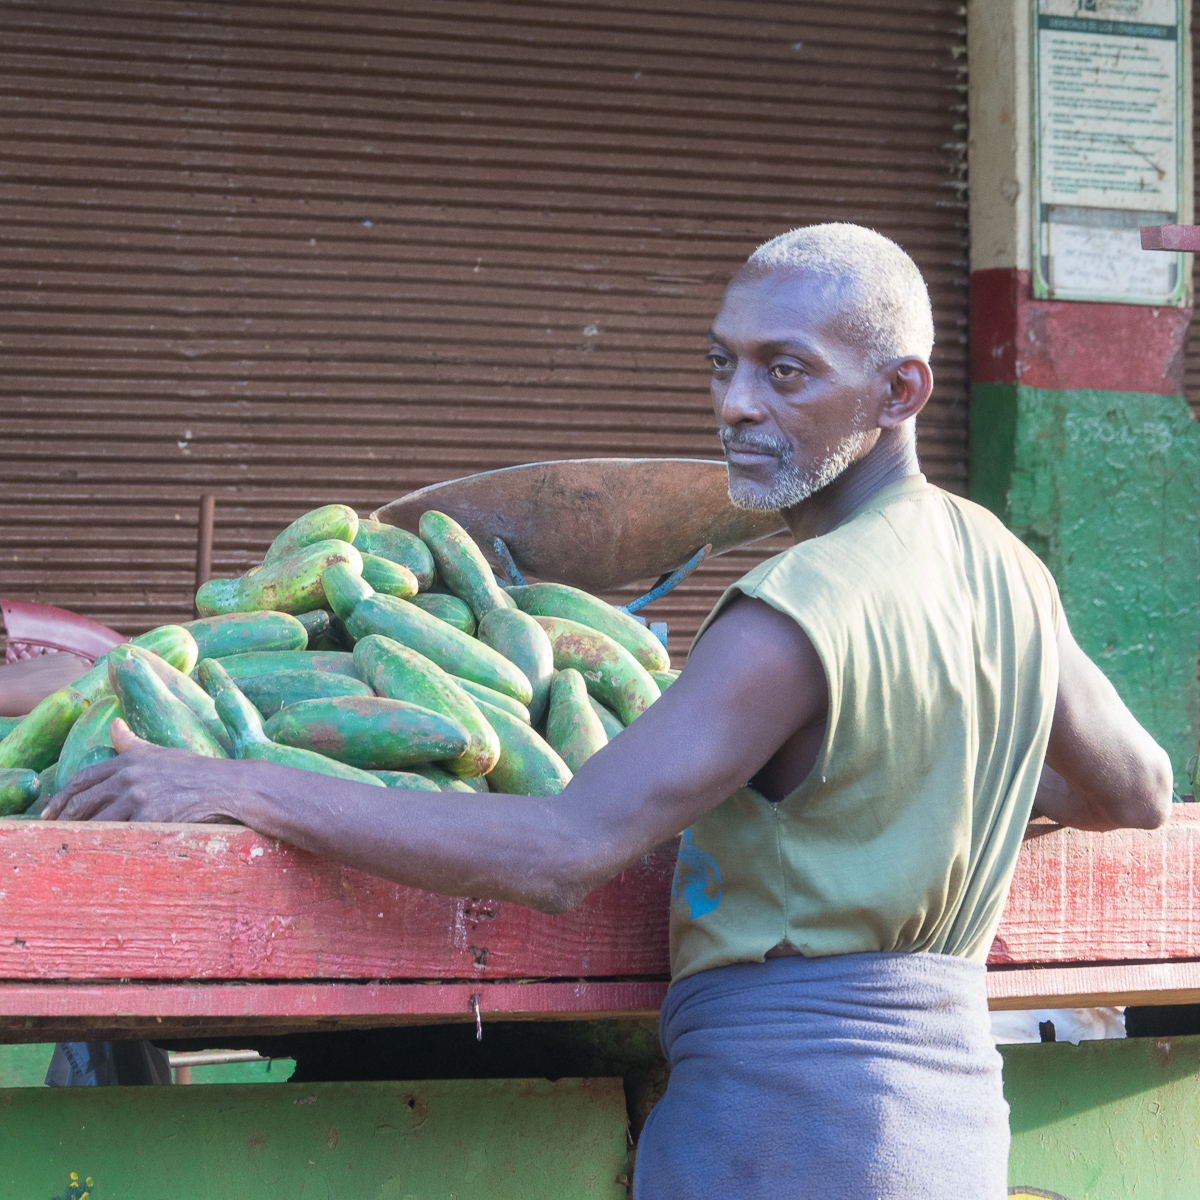 Man selling vegetables in Havana